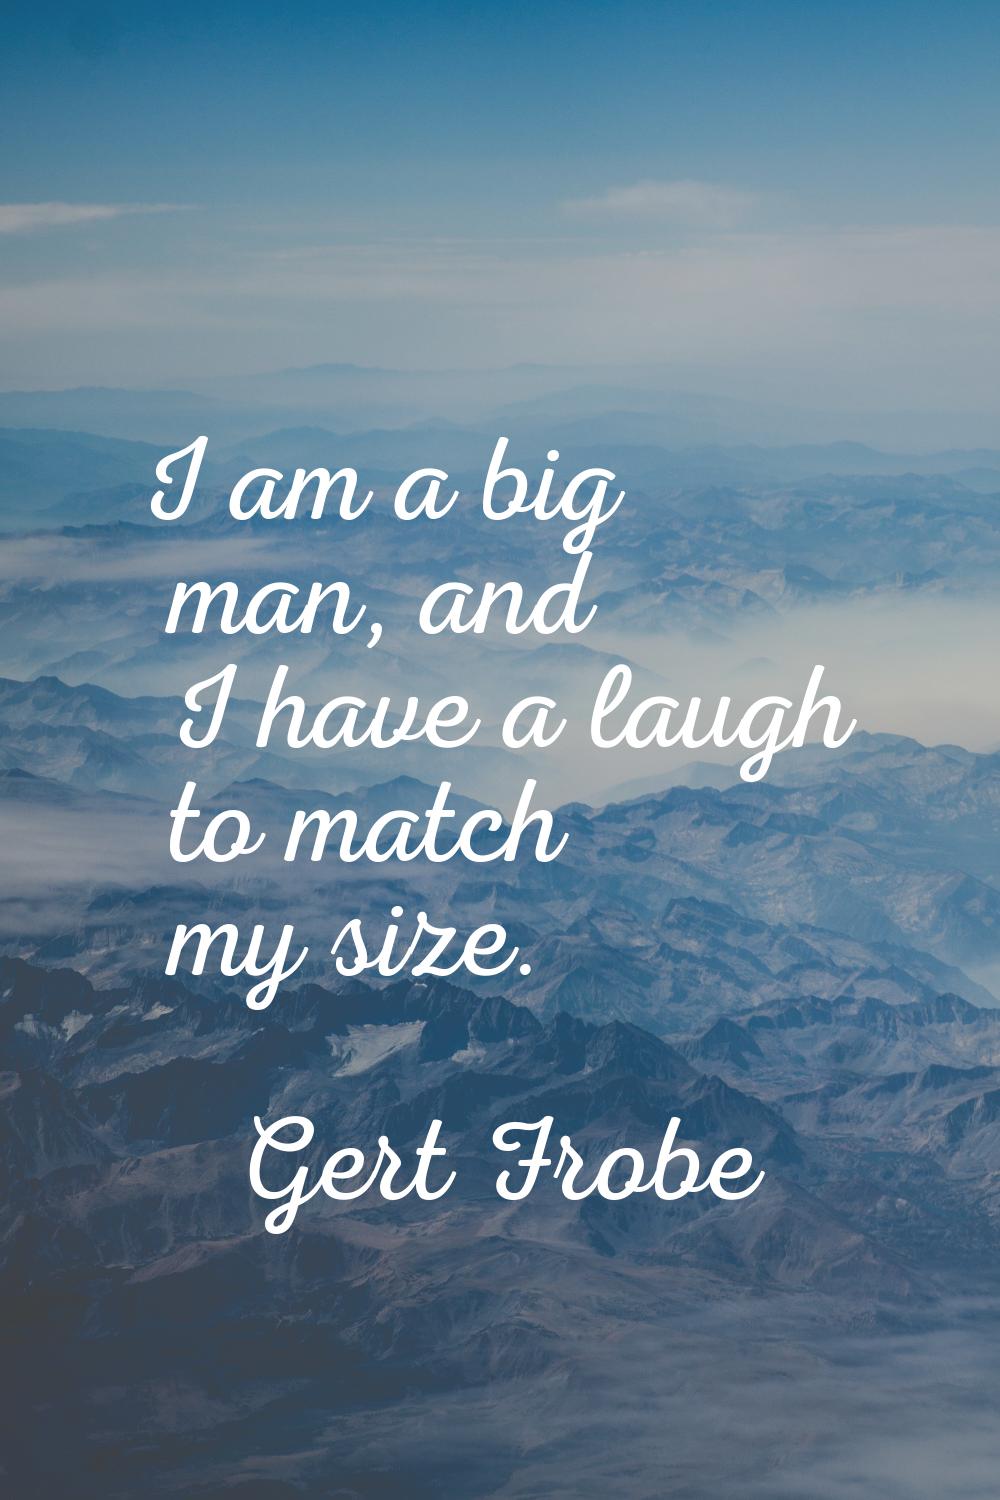 I am a big man, and I have a laugh to match my size.